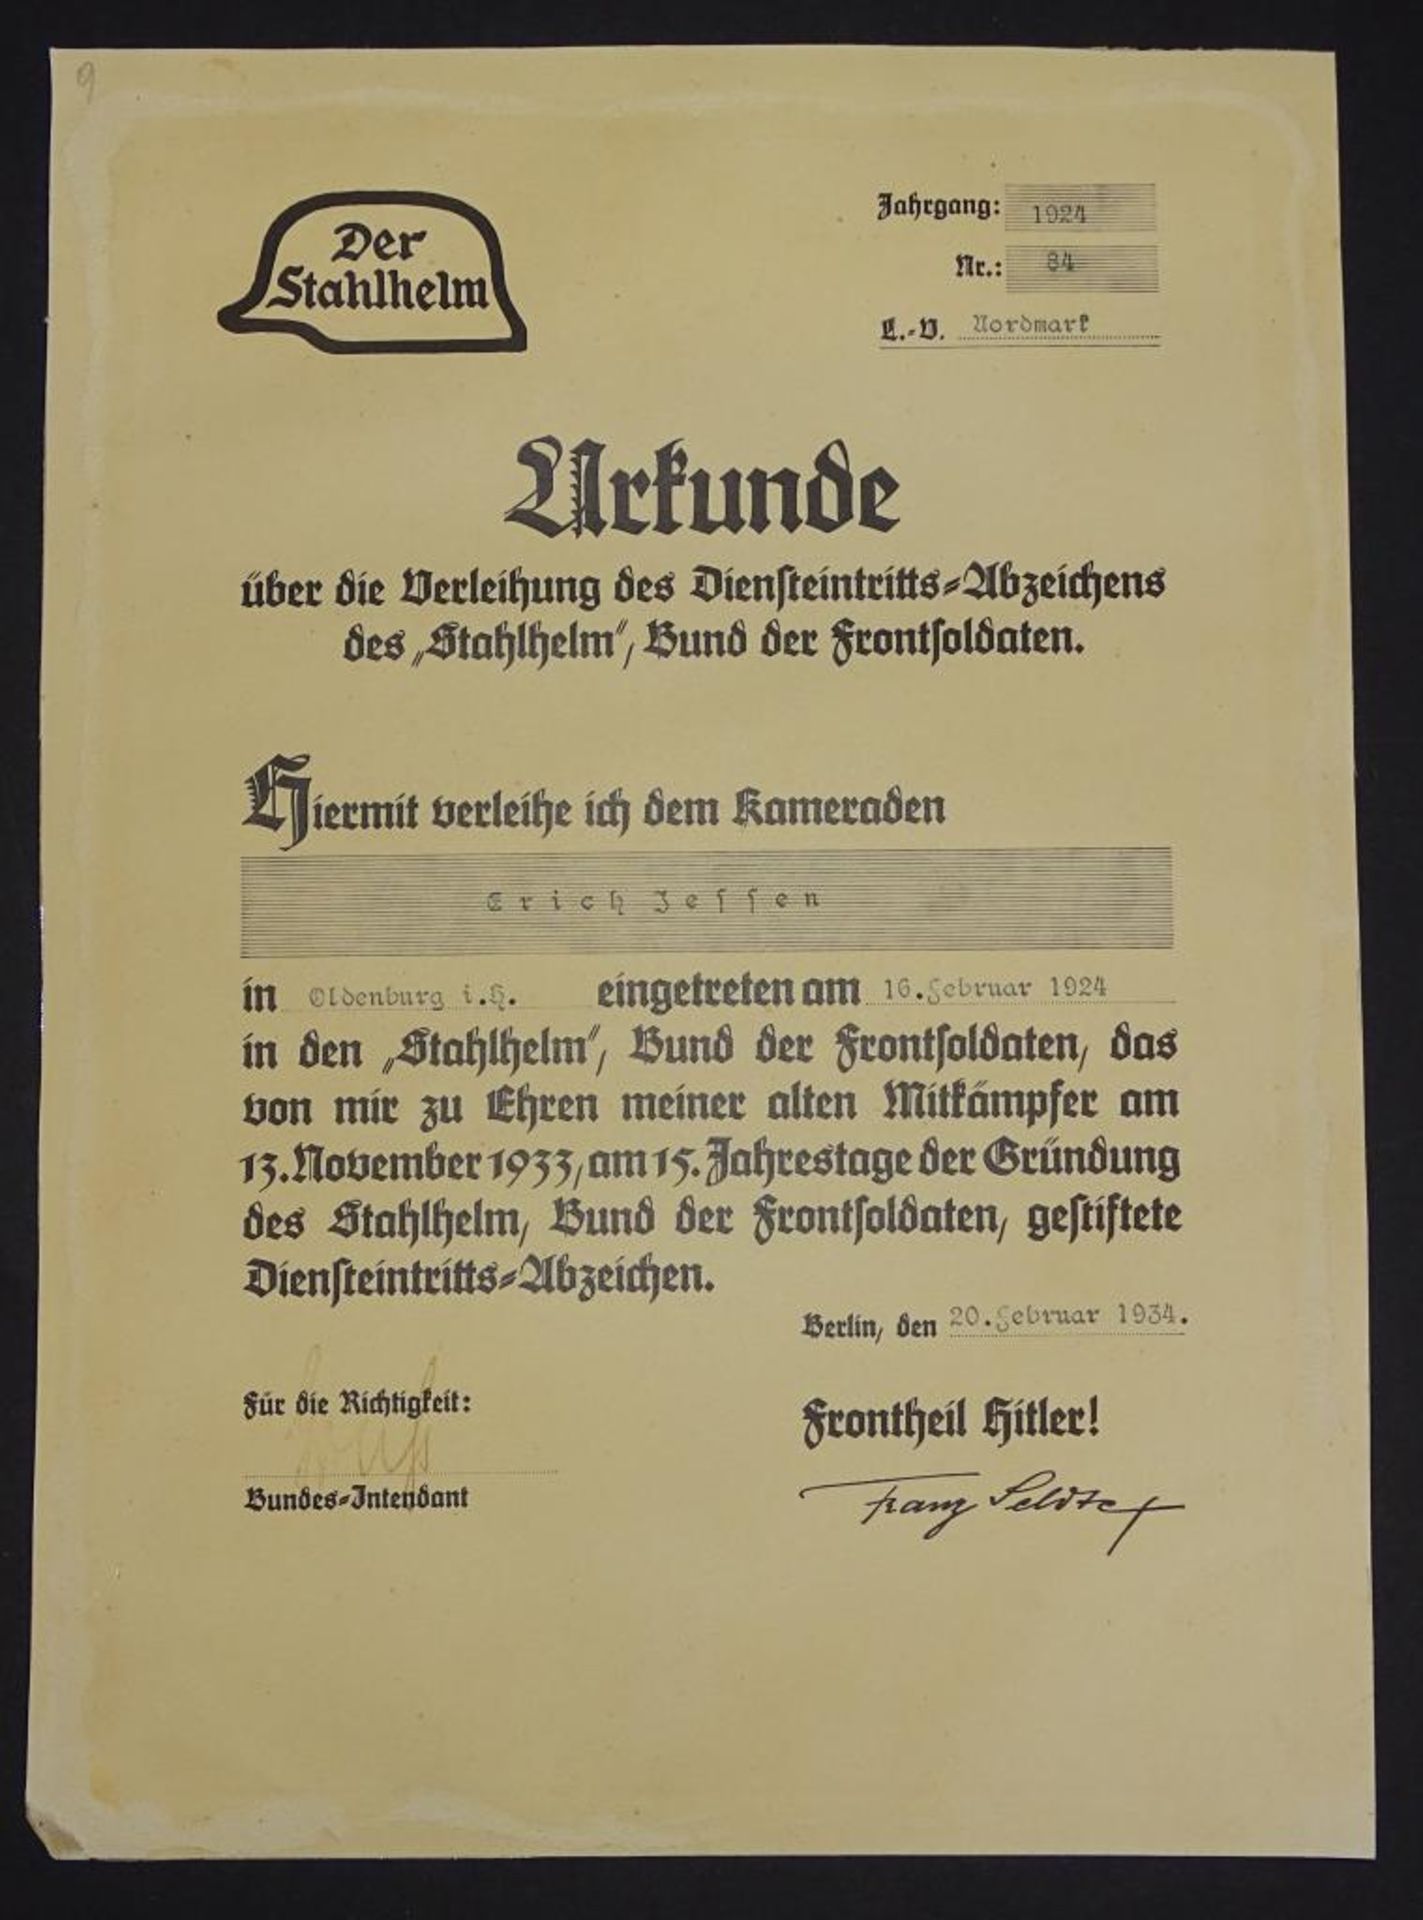 Urkunde,Verleihung des Abzeichens "Stahlhelm", 1934